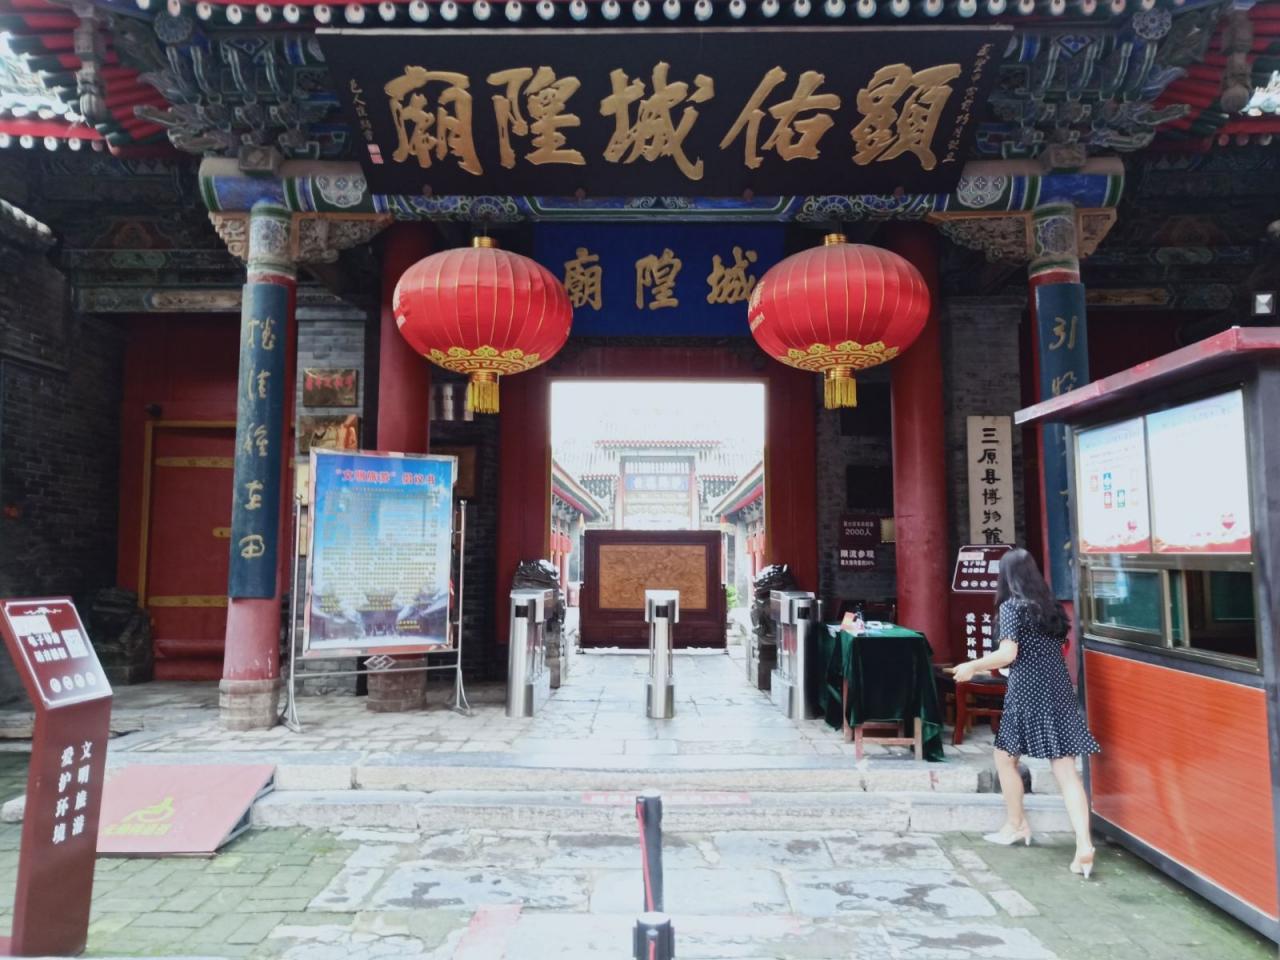 中国最完整的明清古建筑群之一，竟在陕西一个小县城，堪称绝品